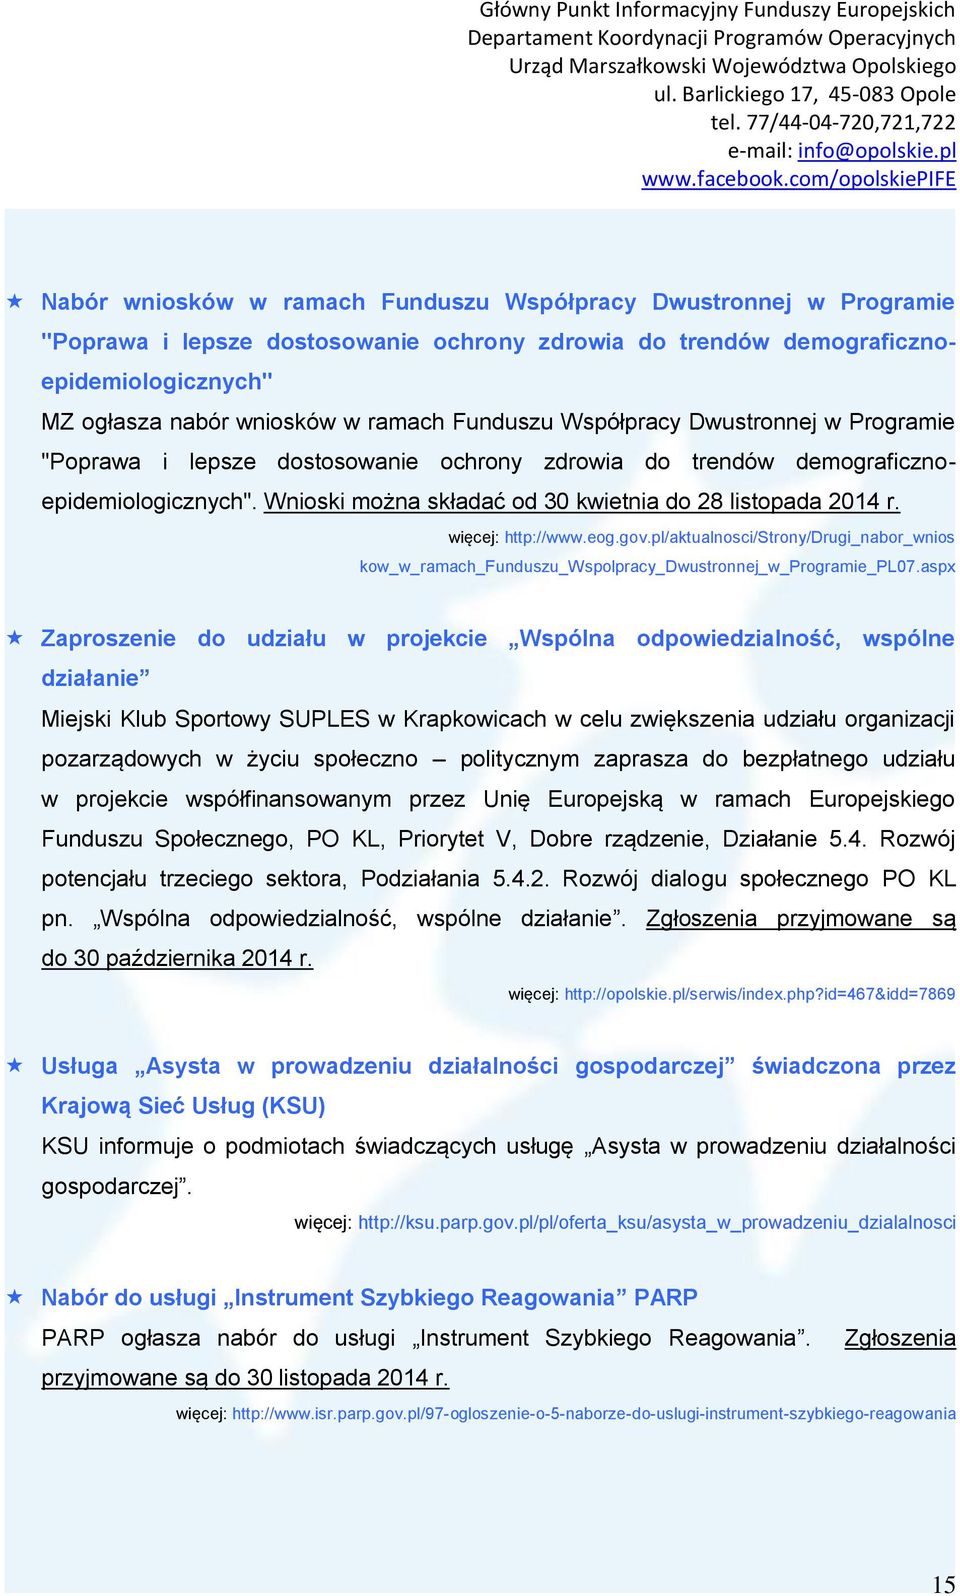 więcej: http://www.eog.gov.pl/aktualnosci/strony/drugi_nabor_wnios kow_w_ramach_funduszu_wspolpracy_dwustronnej_w_programie_pl07.